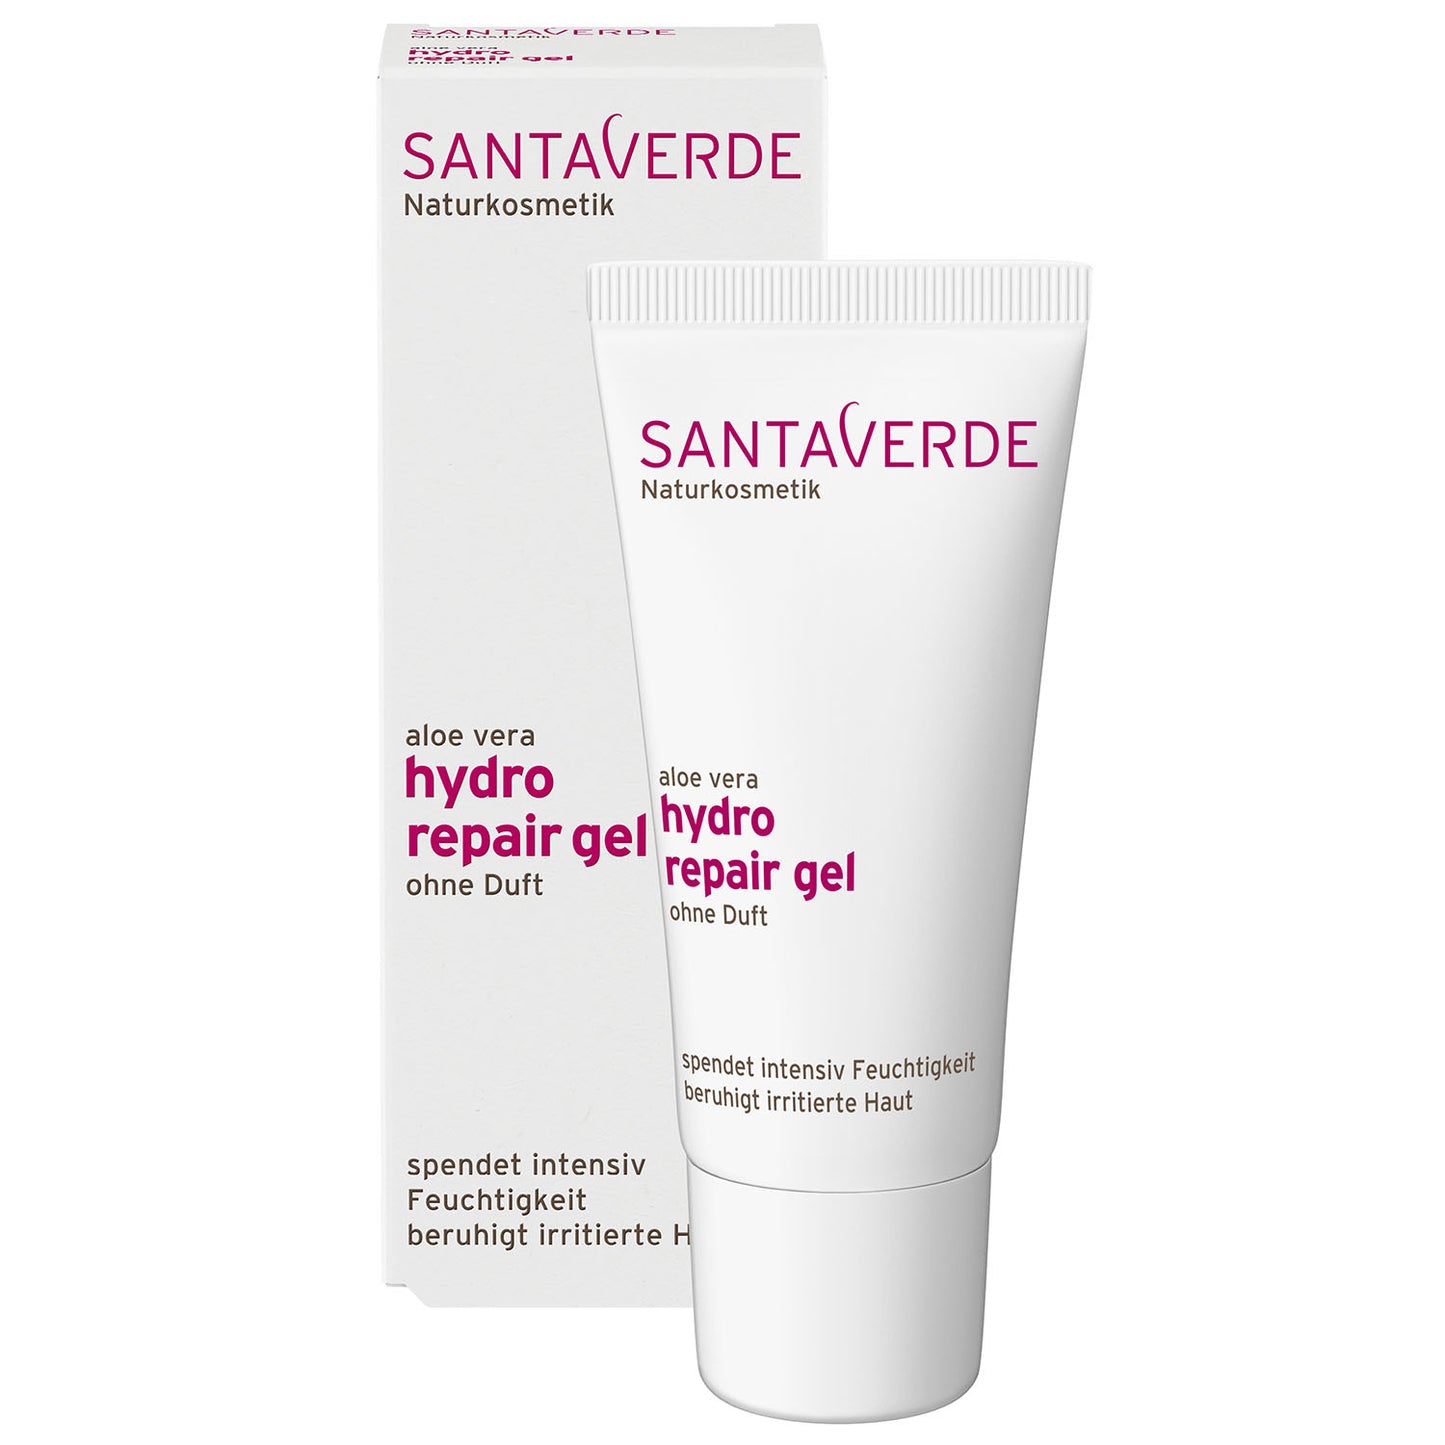 Santaverde - Aloe Vera Hydro Repair Gel ohne Duft - Spezial Gesichtspflege - 30 ml